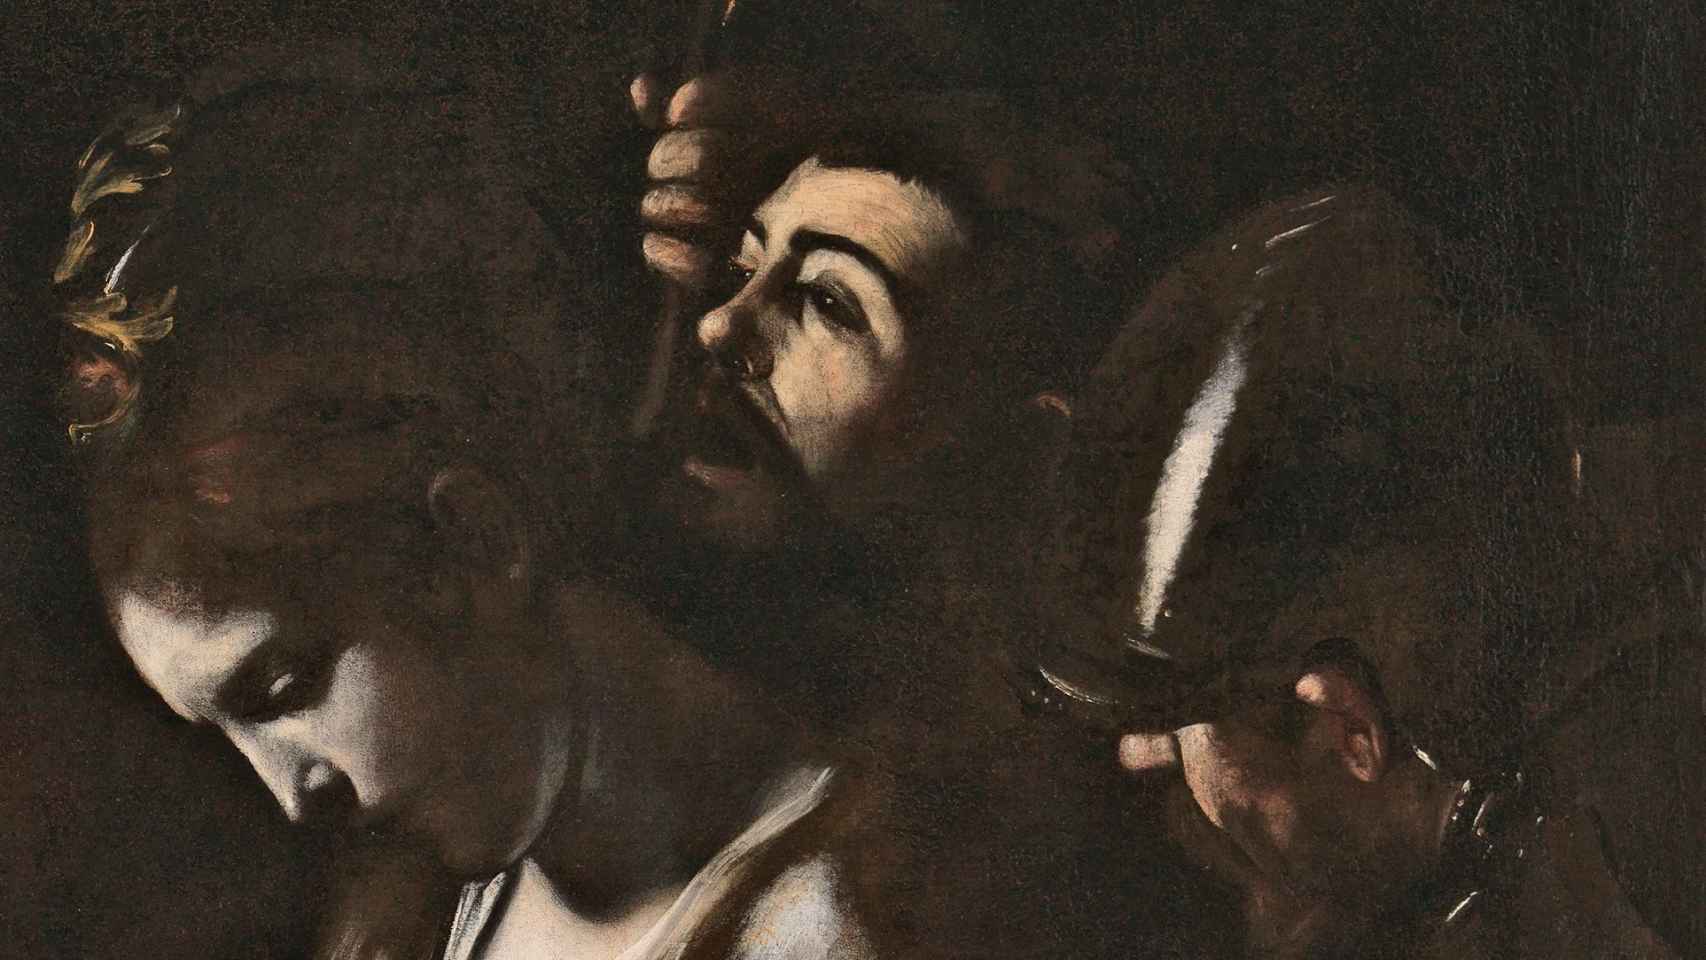 Detalle de autorretrato de Caravaggio (en el centro de la imagen), incluido en el ‘El martirio de Santa Úrsula’.